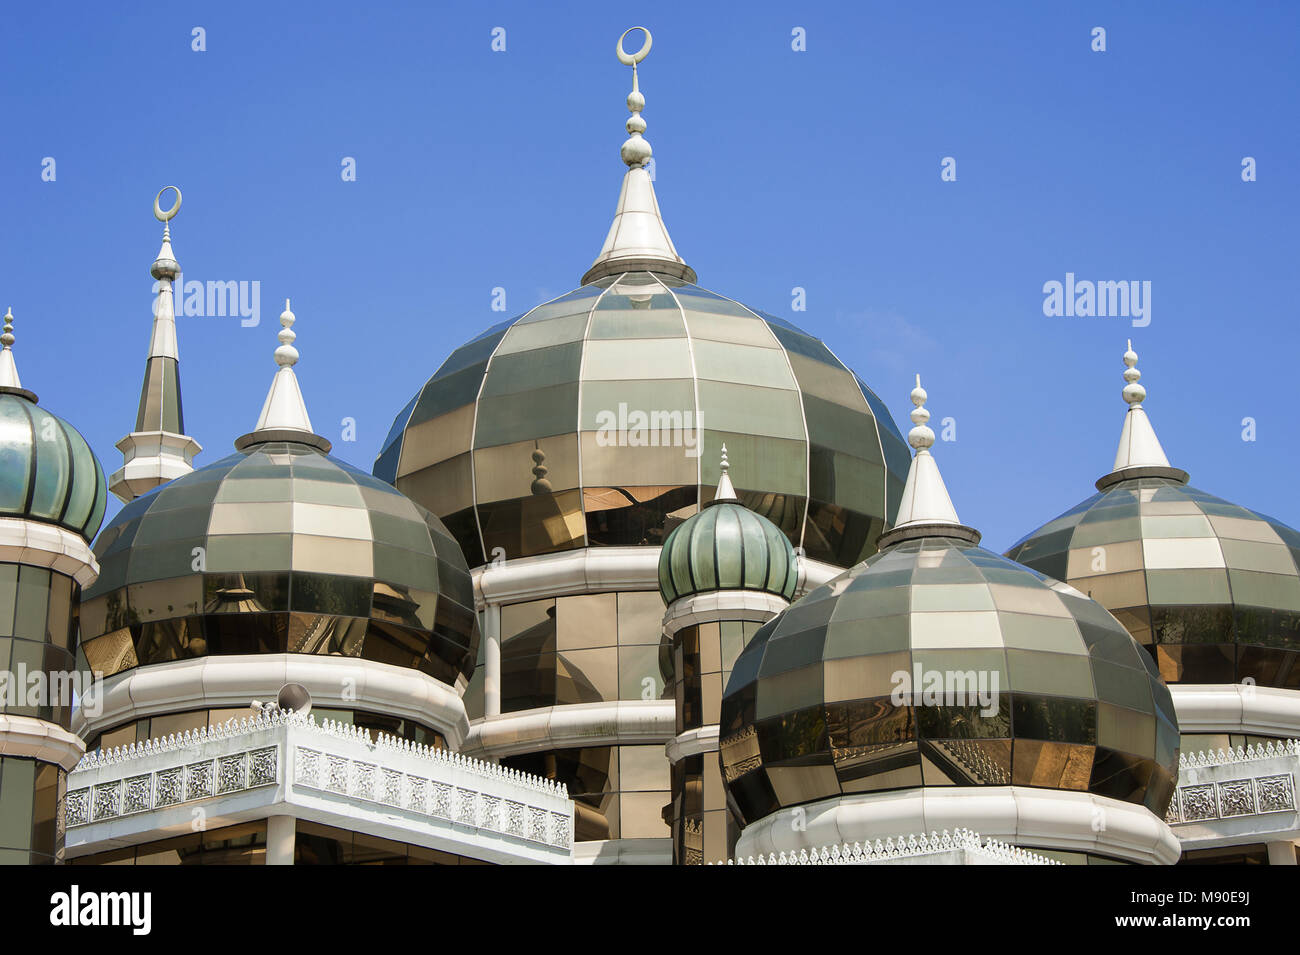 La mosquée de Cristal (Masjid Kristal) dans Koala Terengganu, Malaisie. Les minarets d'or fait d'acier et de verre, étincelle dans le soleil contre un ciel bleu Banque D'Images